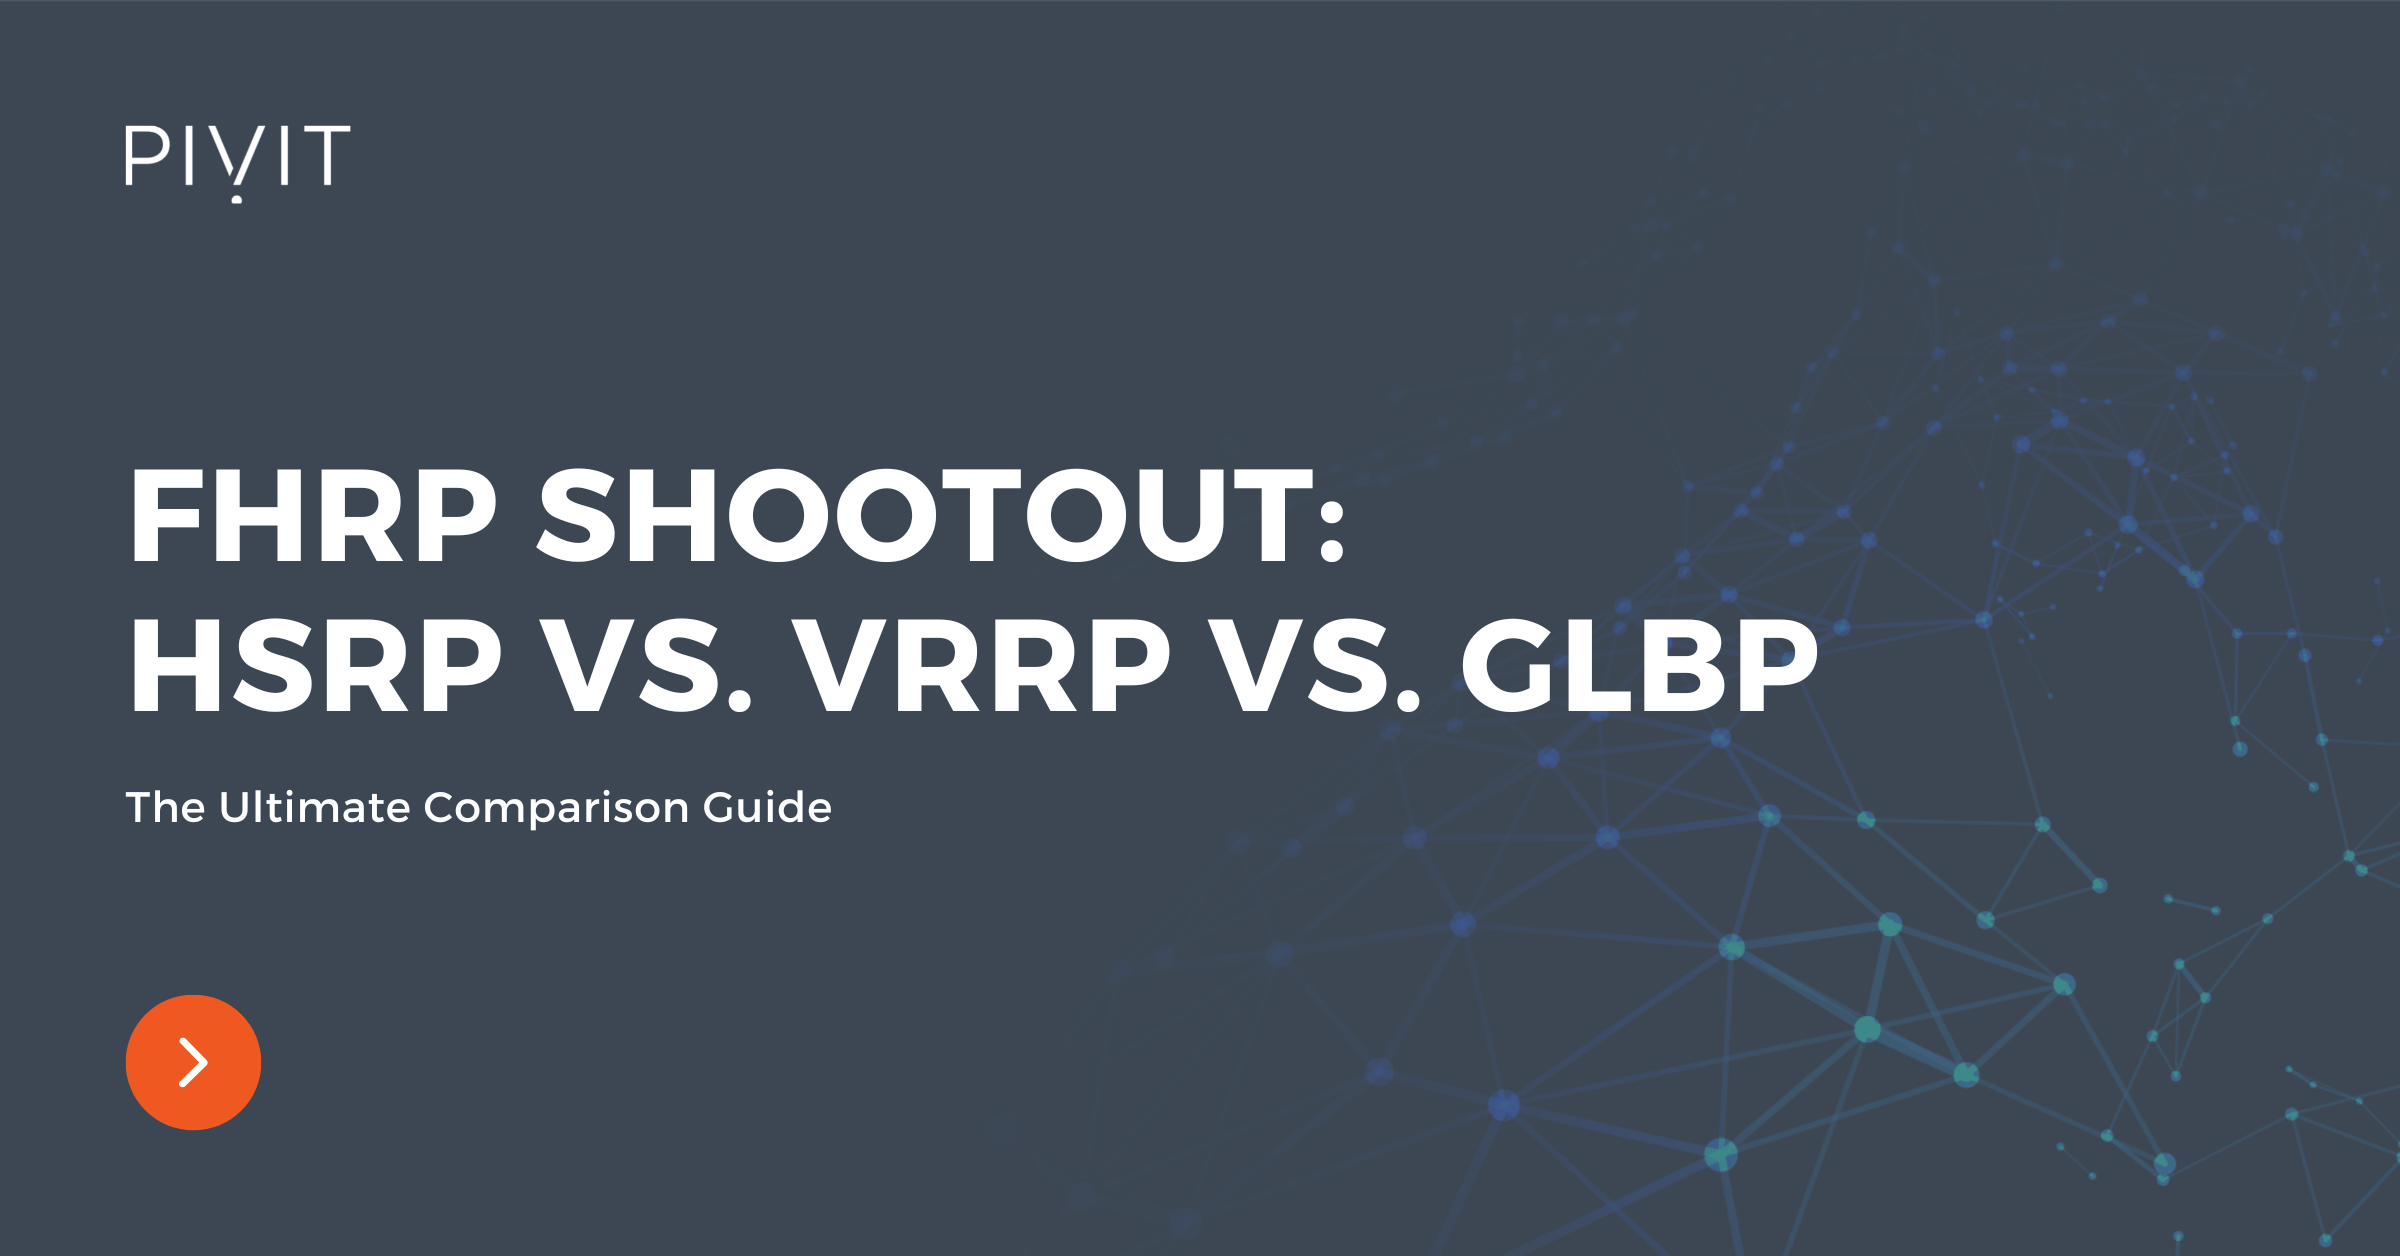 The Ultimate Comparison Guide - FHRP Shootout: HSRP vs. VRRP vs. GLBP